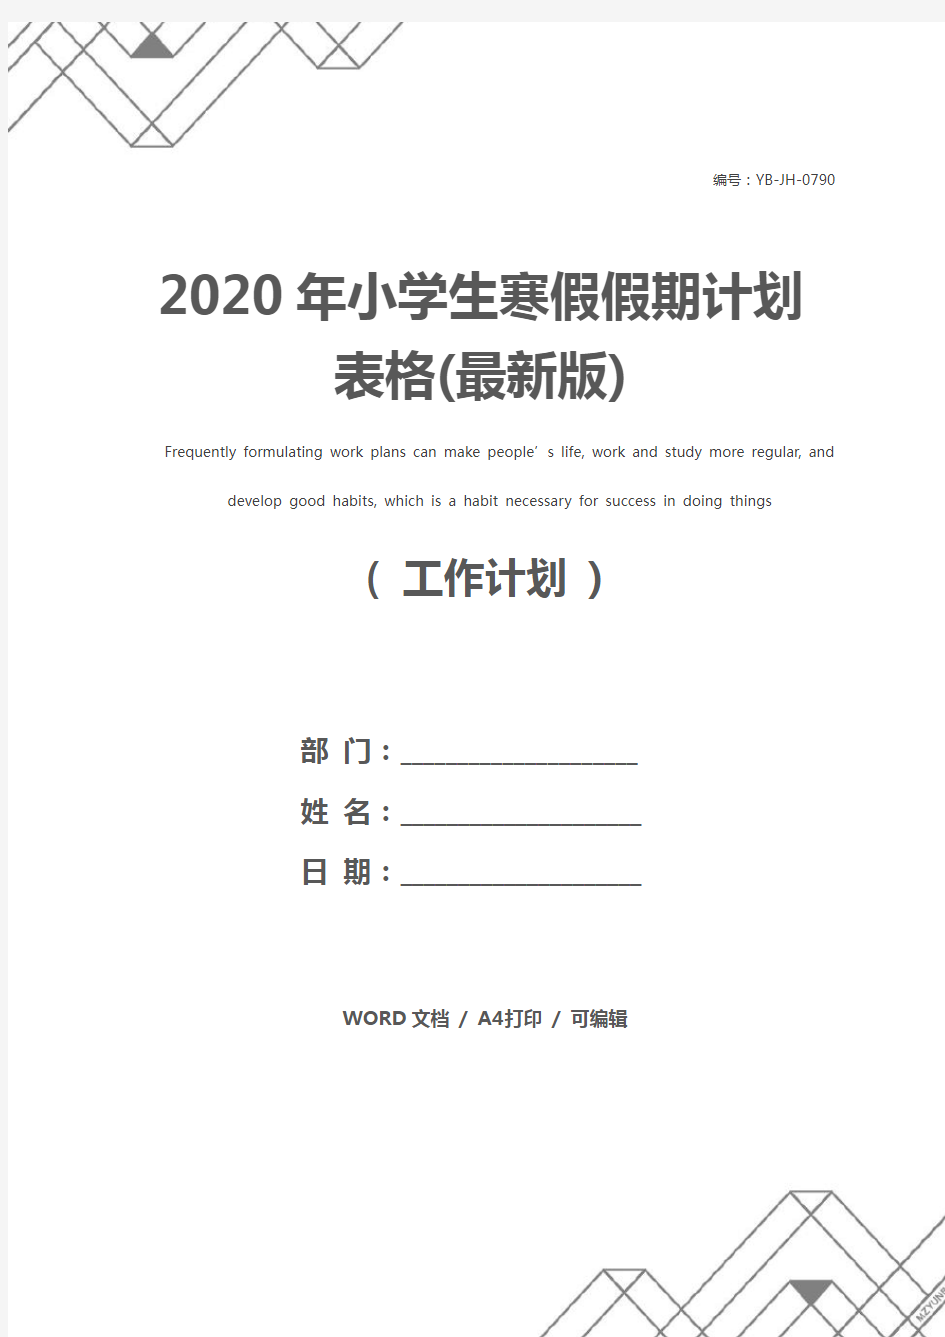 2020年小学生寒假假期计划表格(最新版)